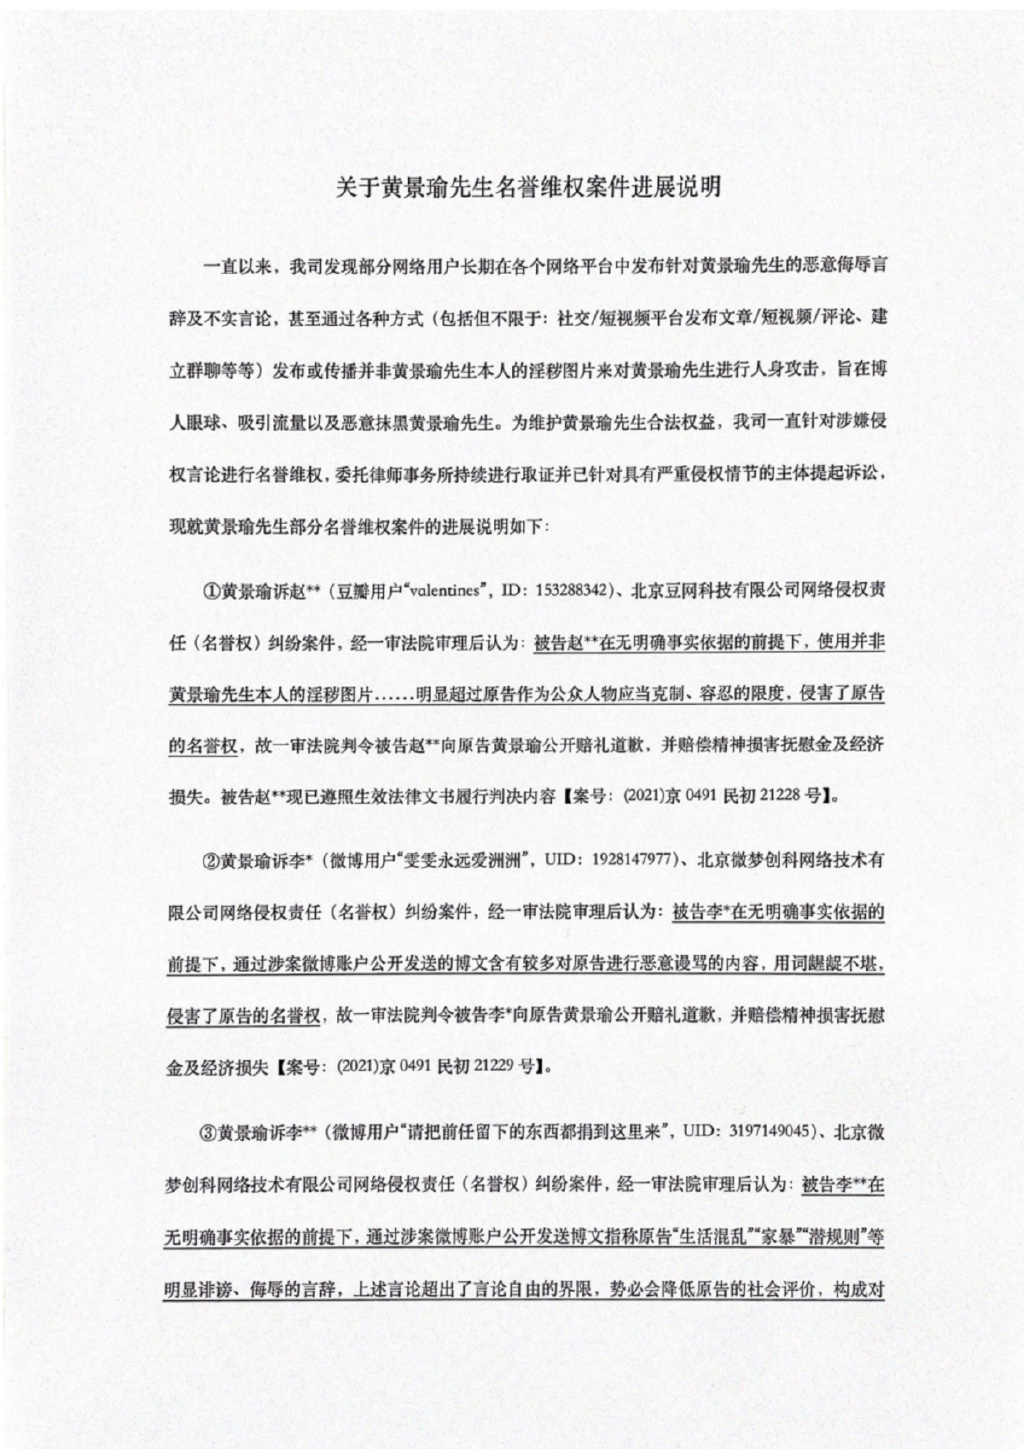 黄景瑜工作室回应私生活传闻：已被法院认定为诽谤、侮辱言论